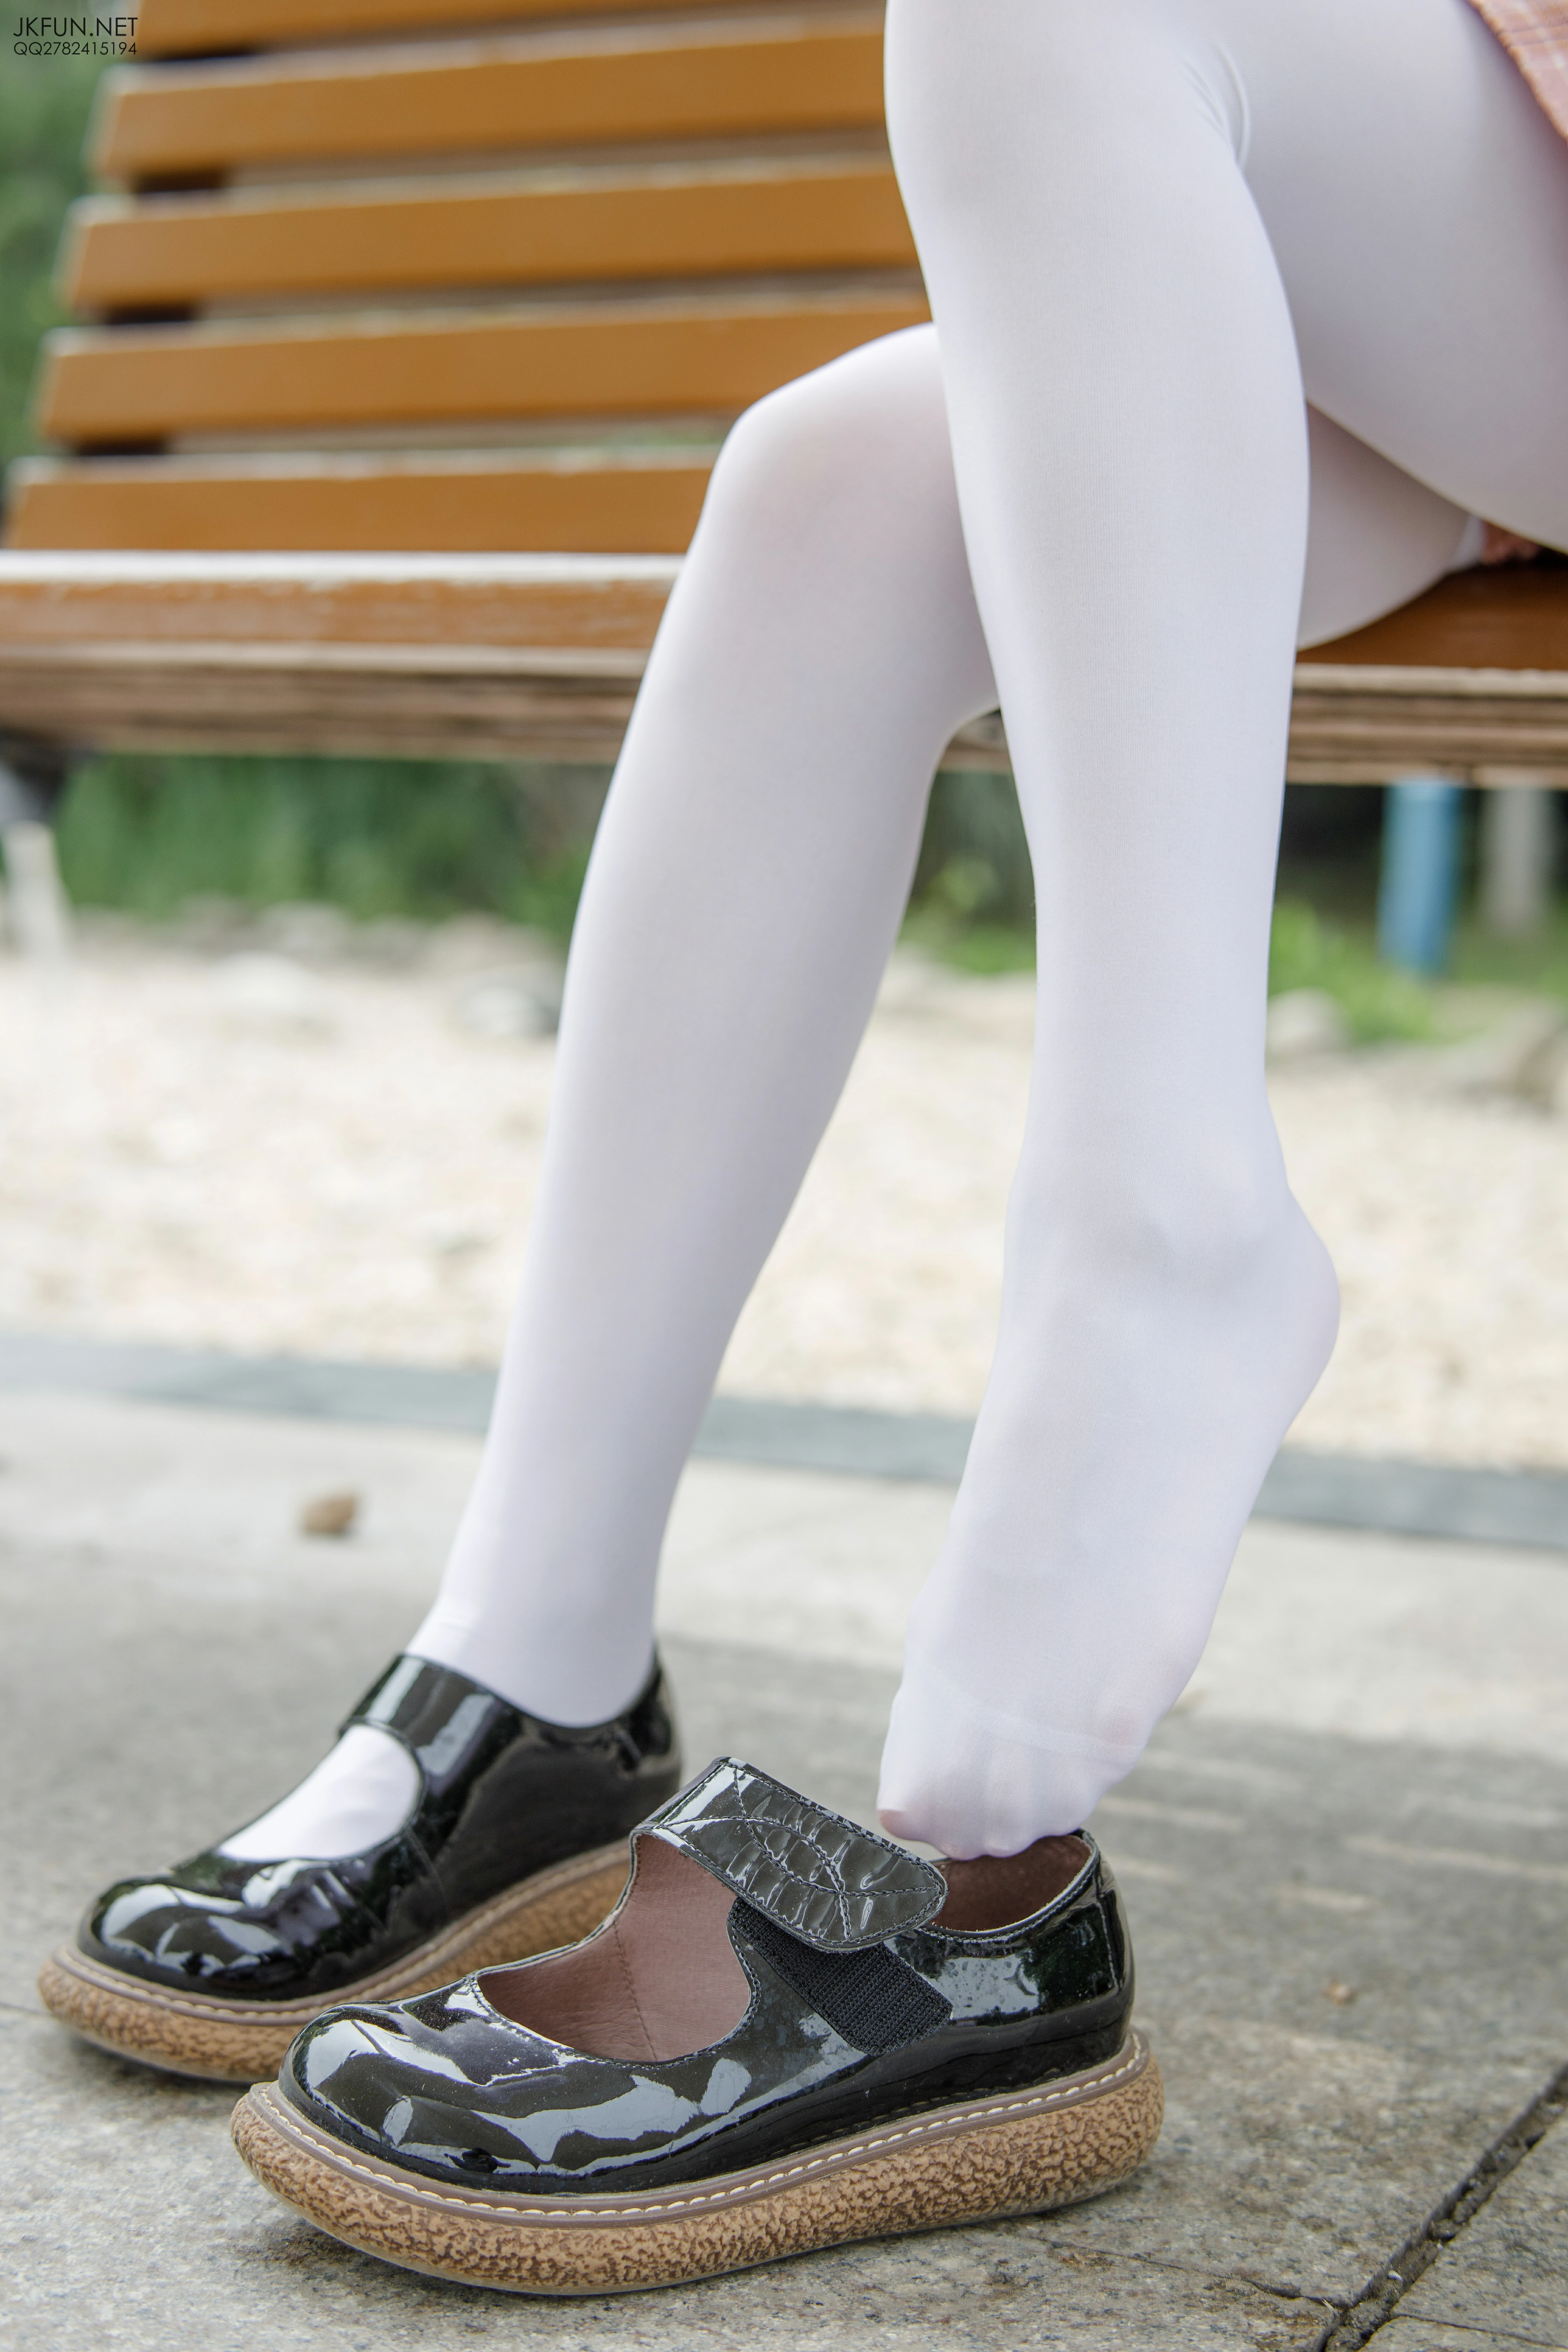 [森萝财团]JKFUN-007 萝莉 默陌 80D白丝 粉色高中女生制服与短裙加白色丝袜美腿性感私房写真集,